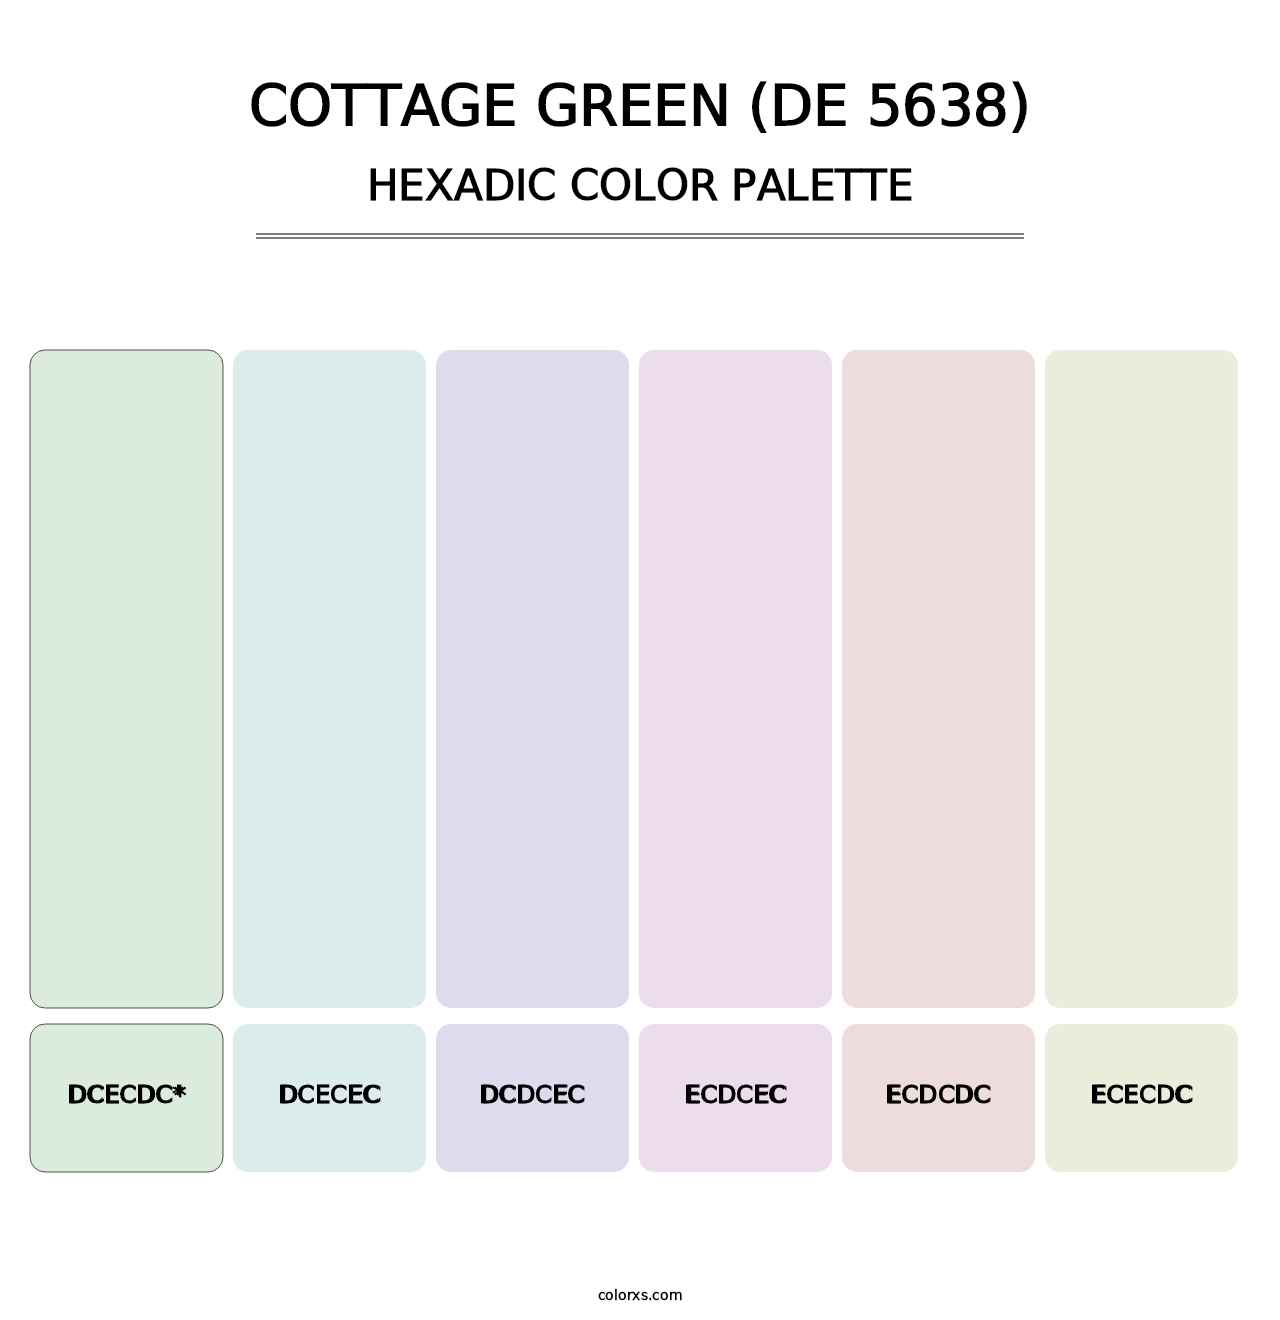 Cottage Green (DE 5638) - Hexadic Color Palette